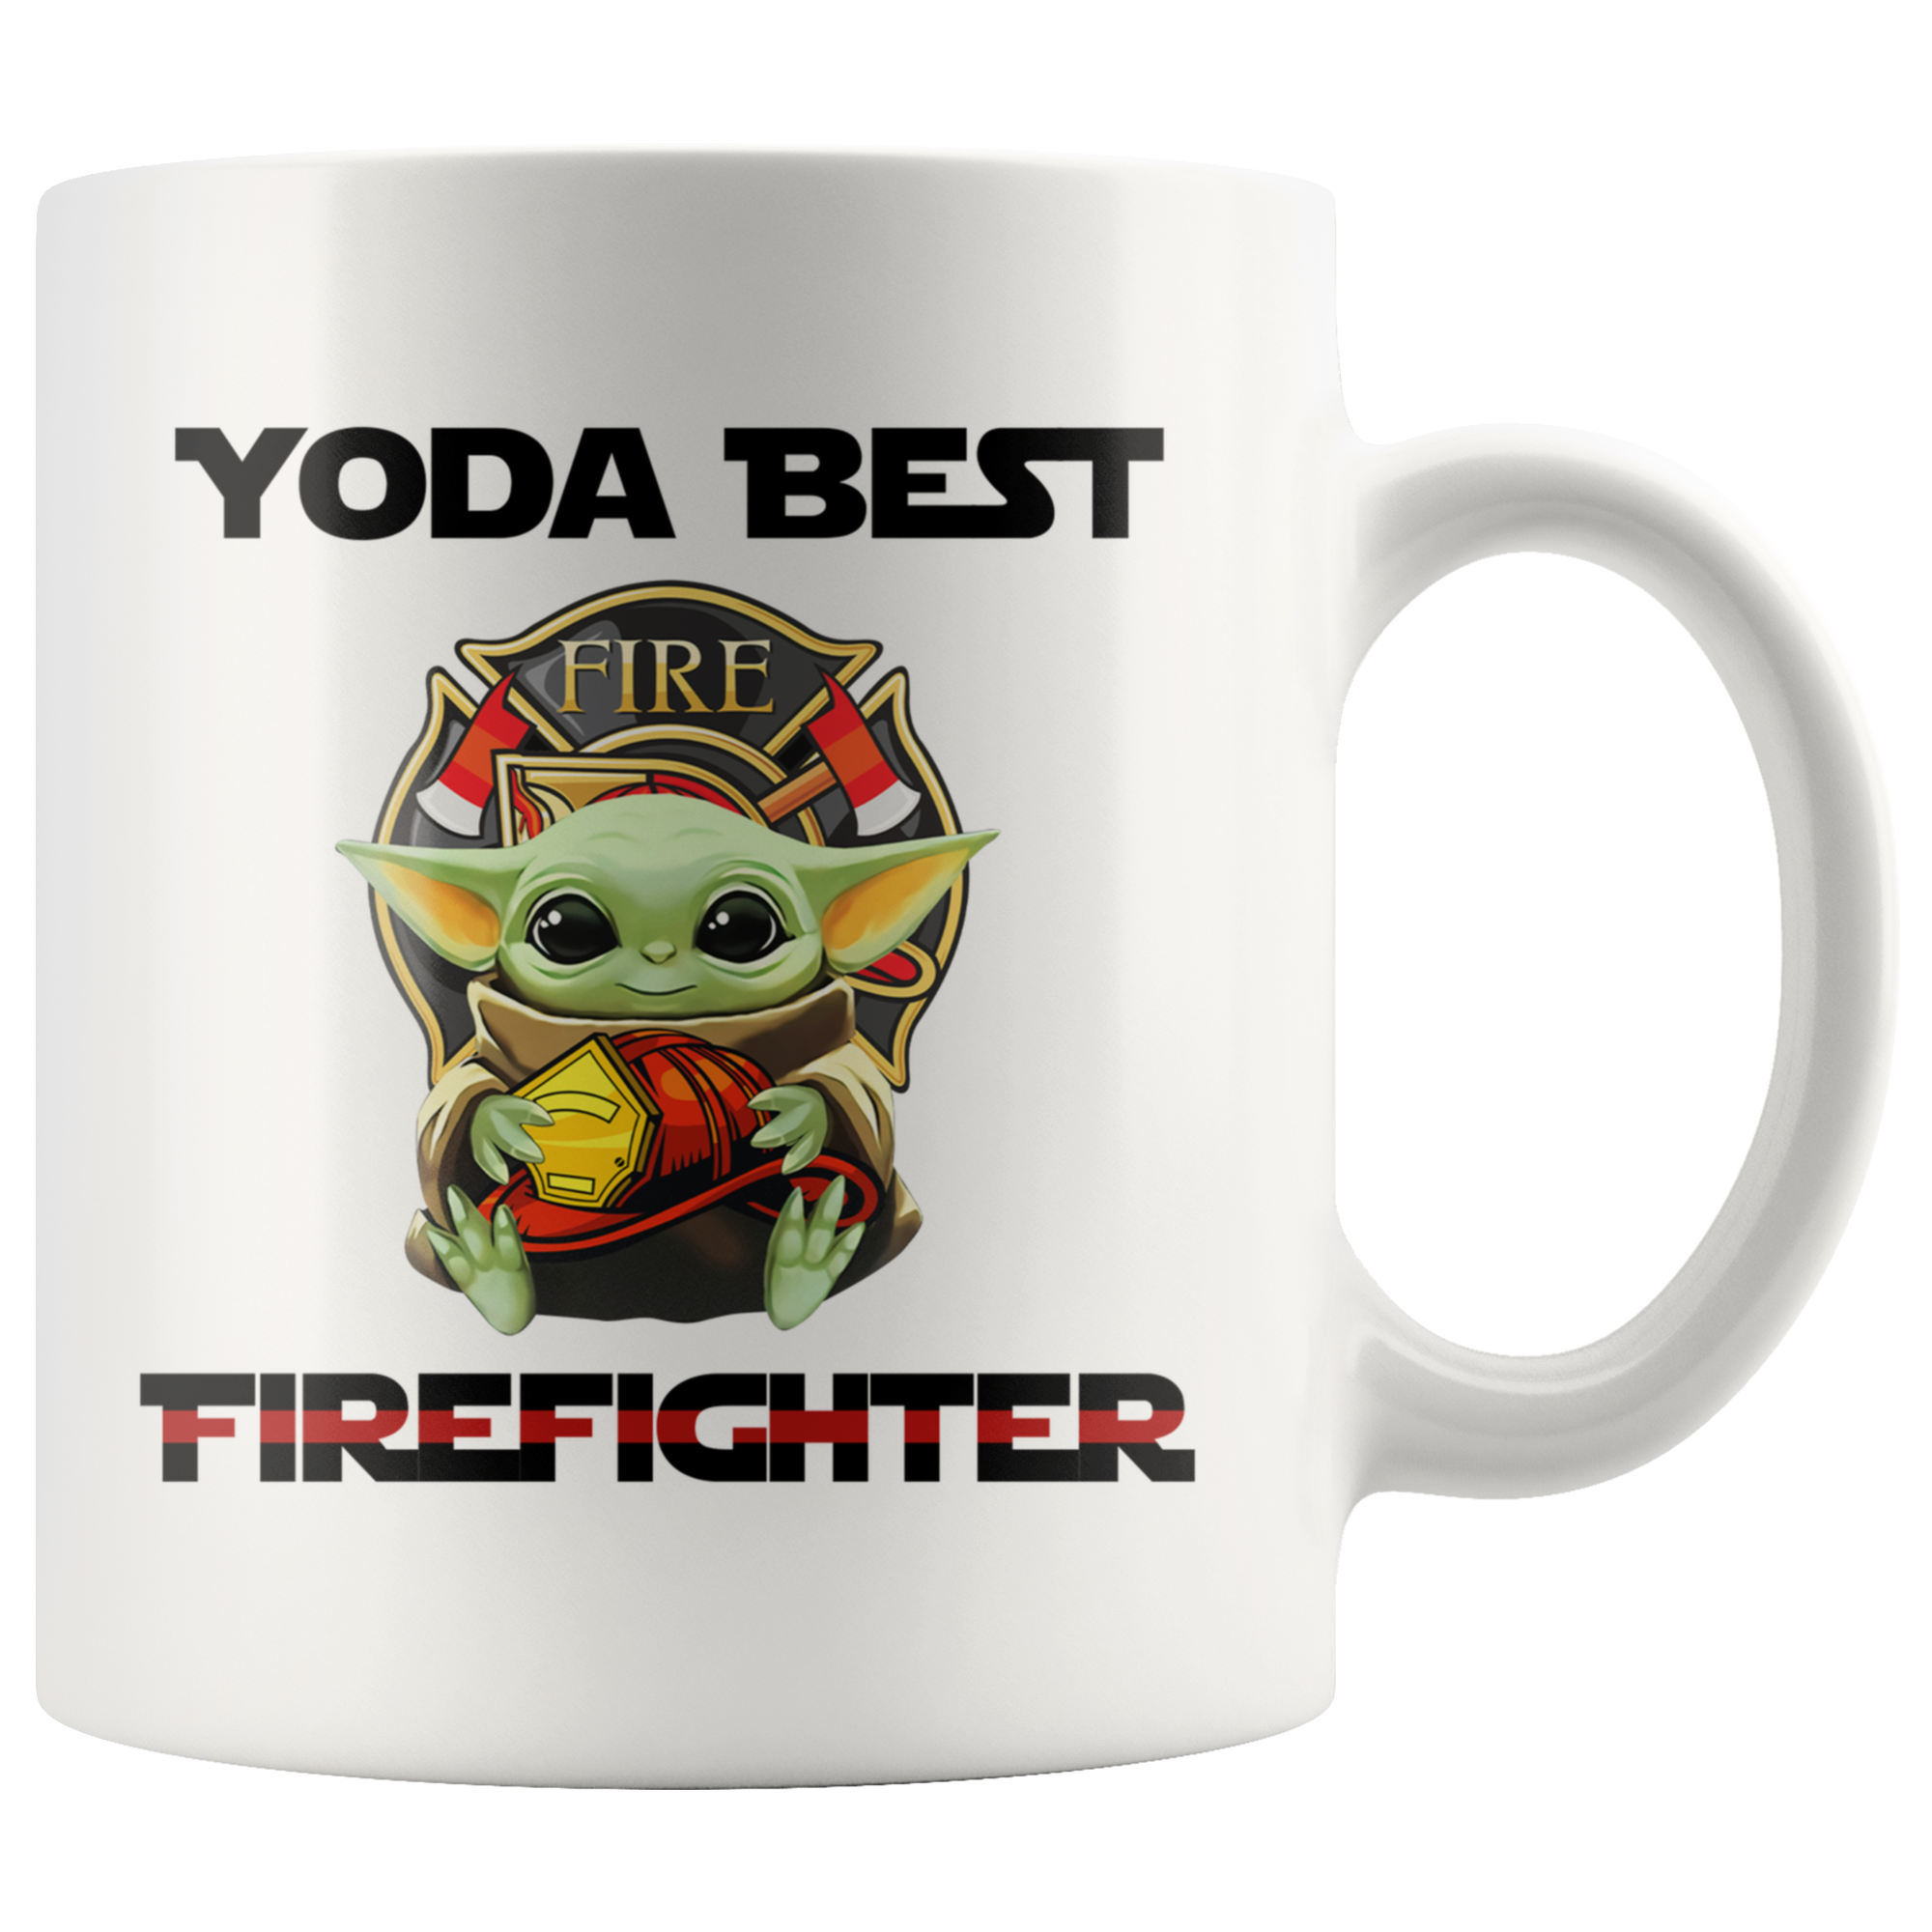 Yoda Best Firefighter Mugs